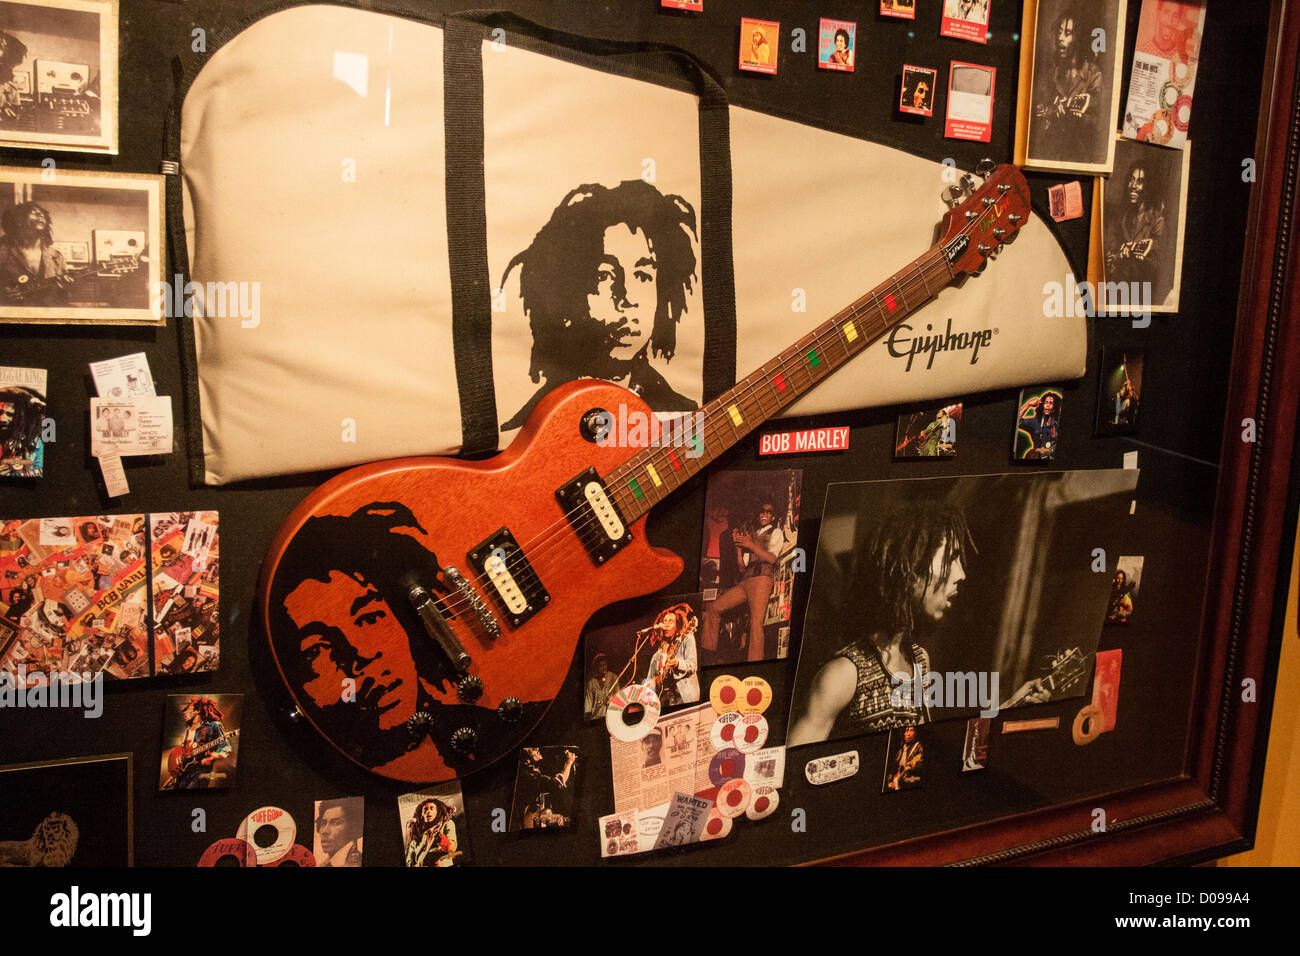 Mostrare la chitarra che apparteneva a Bob Marley (1945-1981) giamaicano reggae cantante IN CASO DI VISUALIZZAZIONE DI BOB MARLEY CENTER mausoleo nove Foto Stock